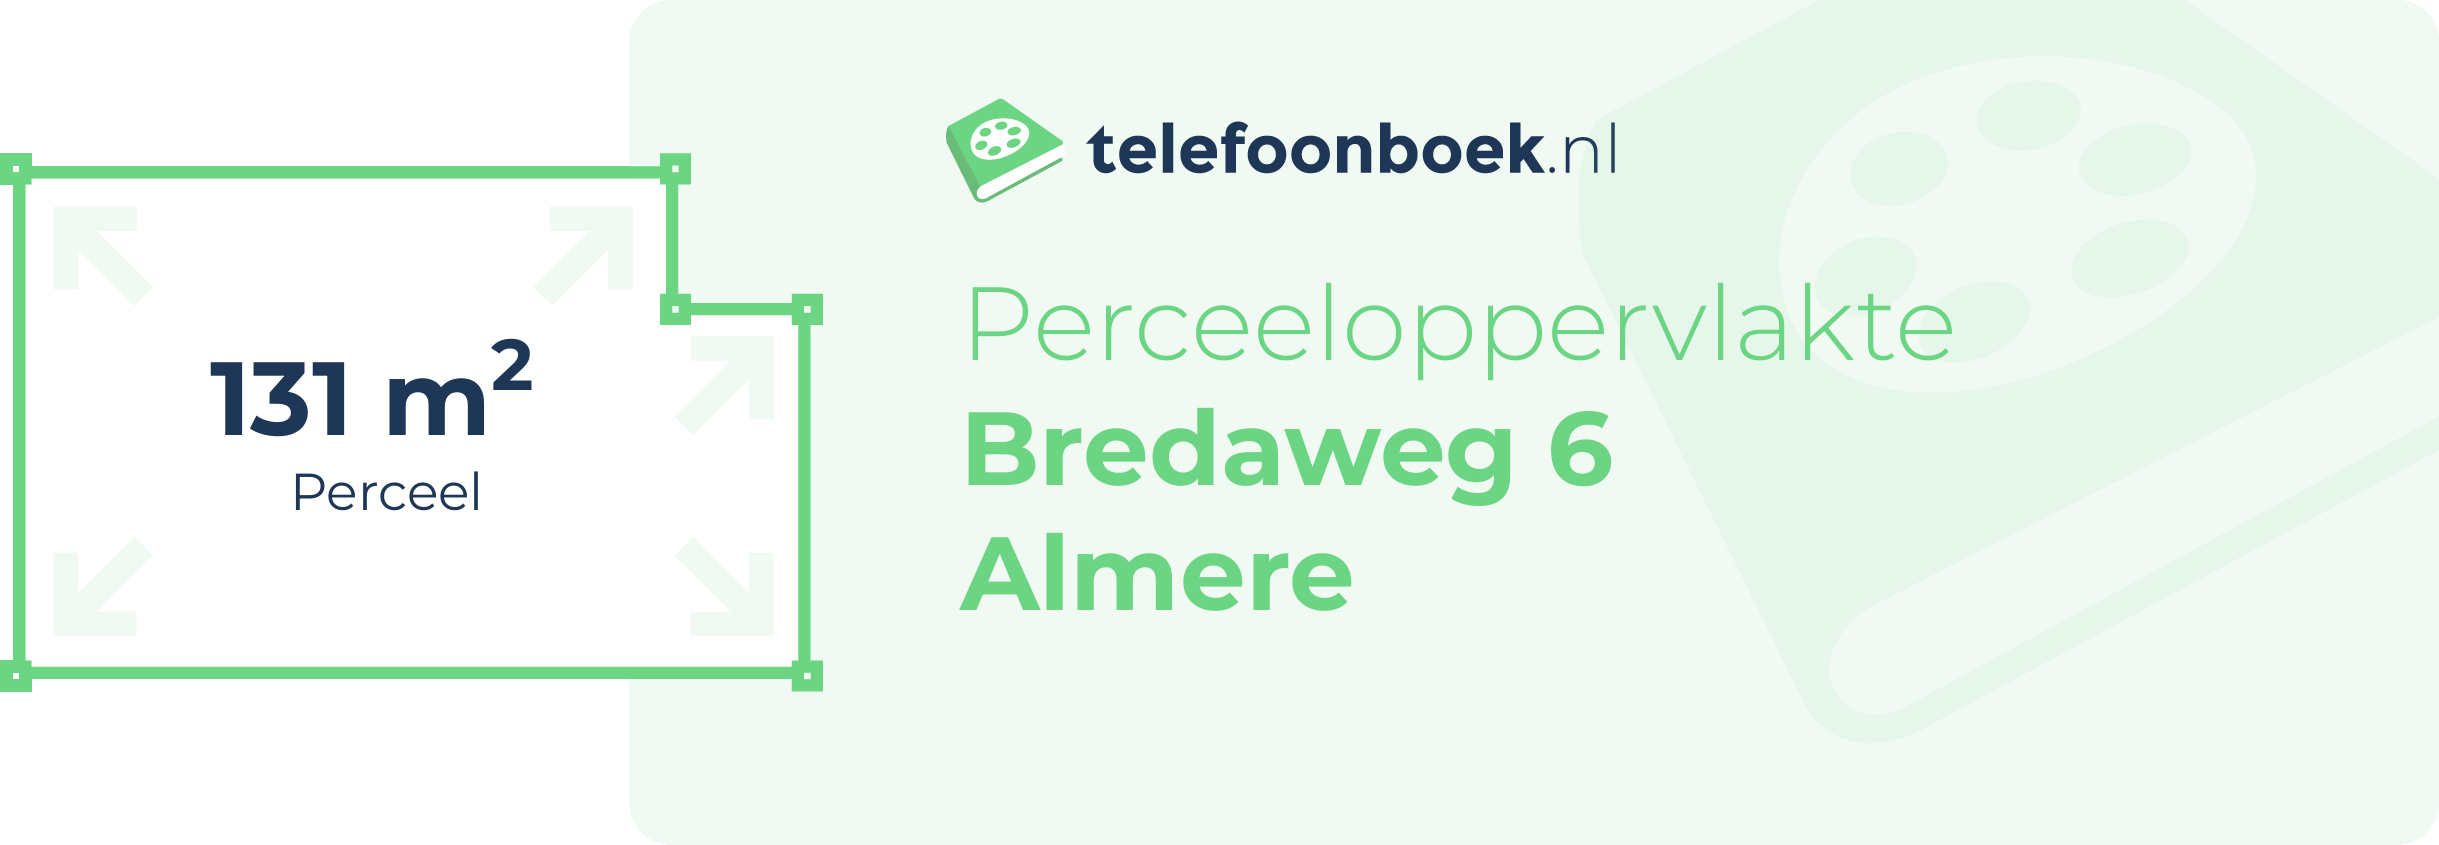 Perceeloppervlakte Bredaweg 6 Almere